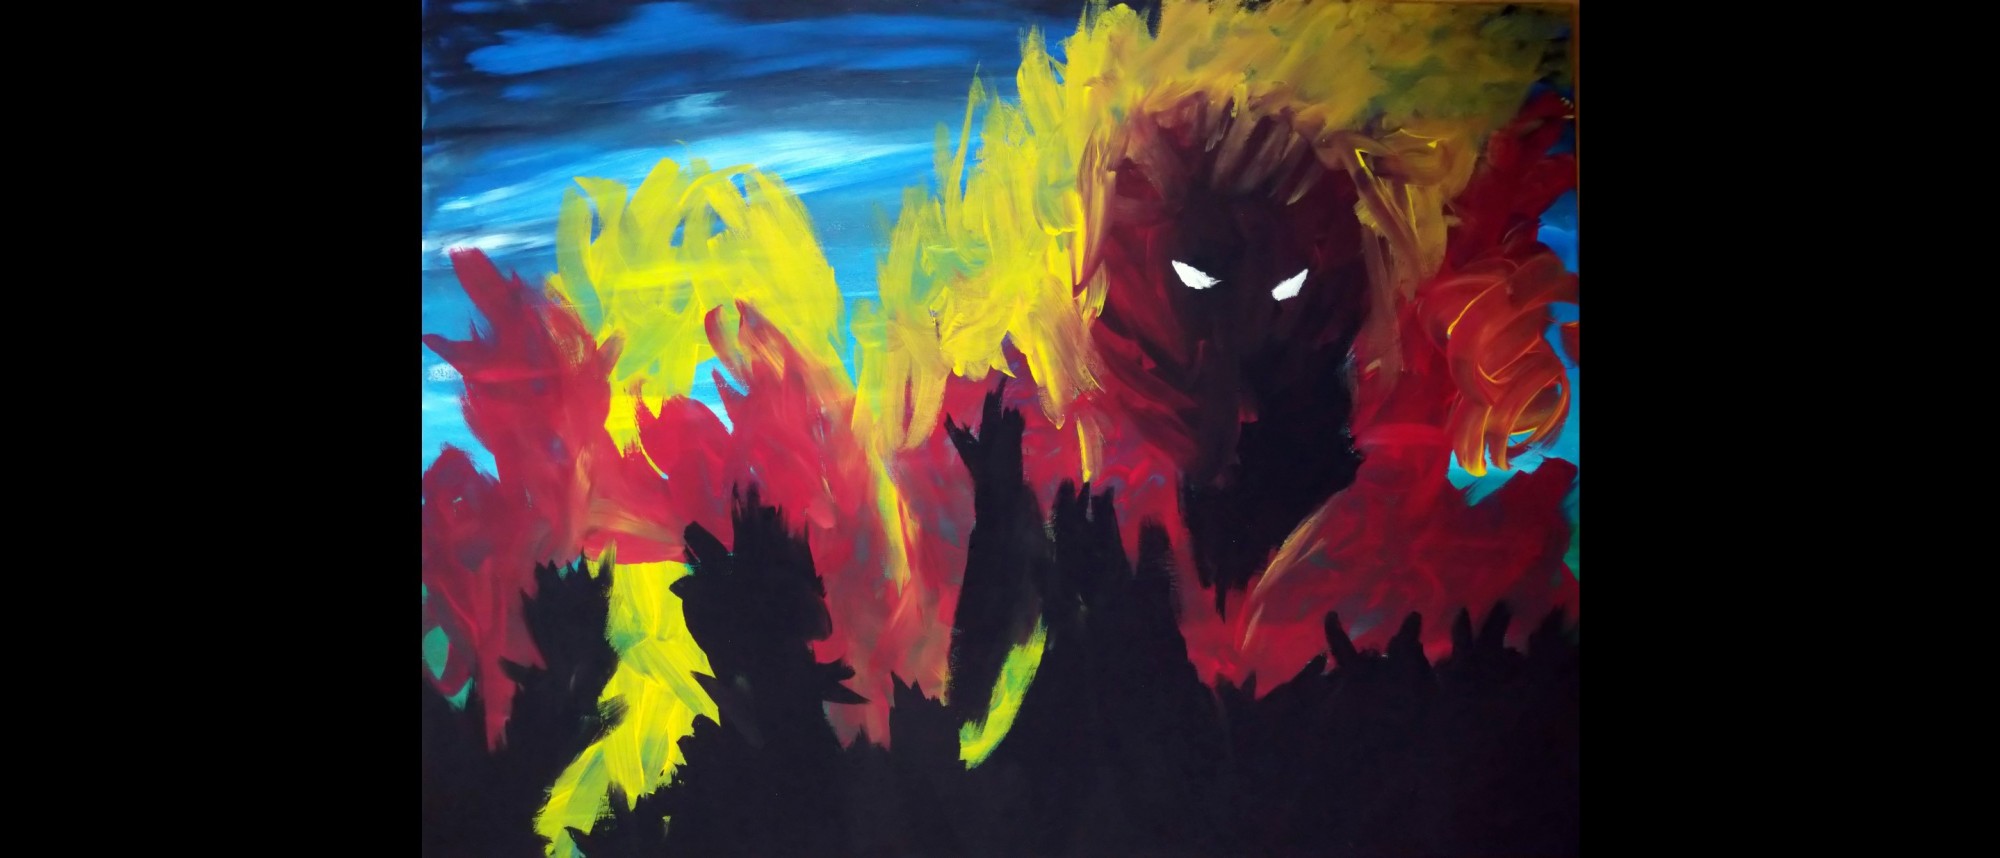 Acrylbild mit düsterer Stimmung, in Gelb und Rot Flammen vor blauem Himmel, davor schwarze Silhuetten. Rechts eine dunkle Figur mit weiß herausstechenden Augen.